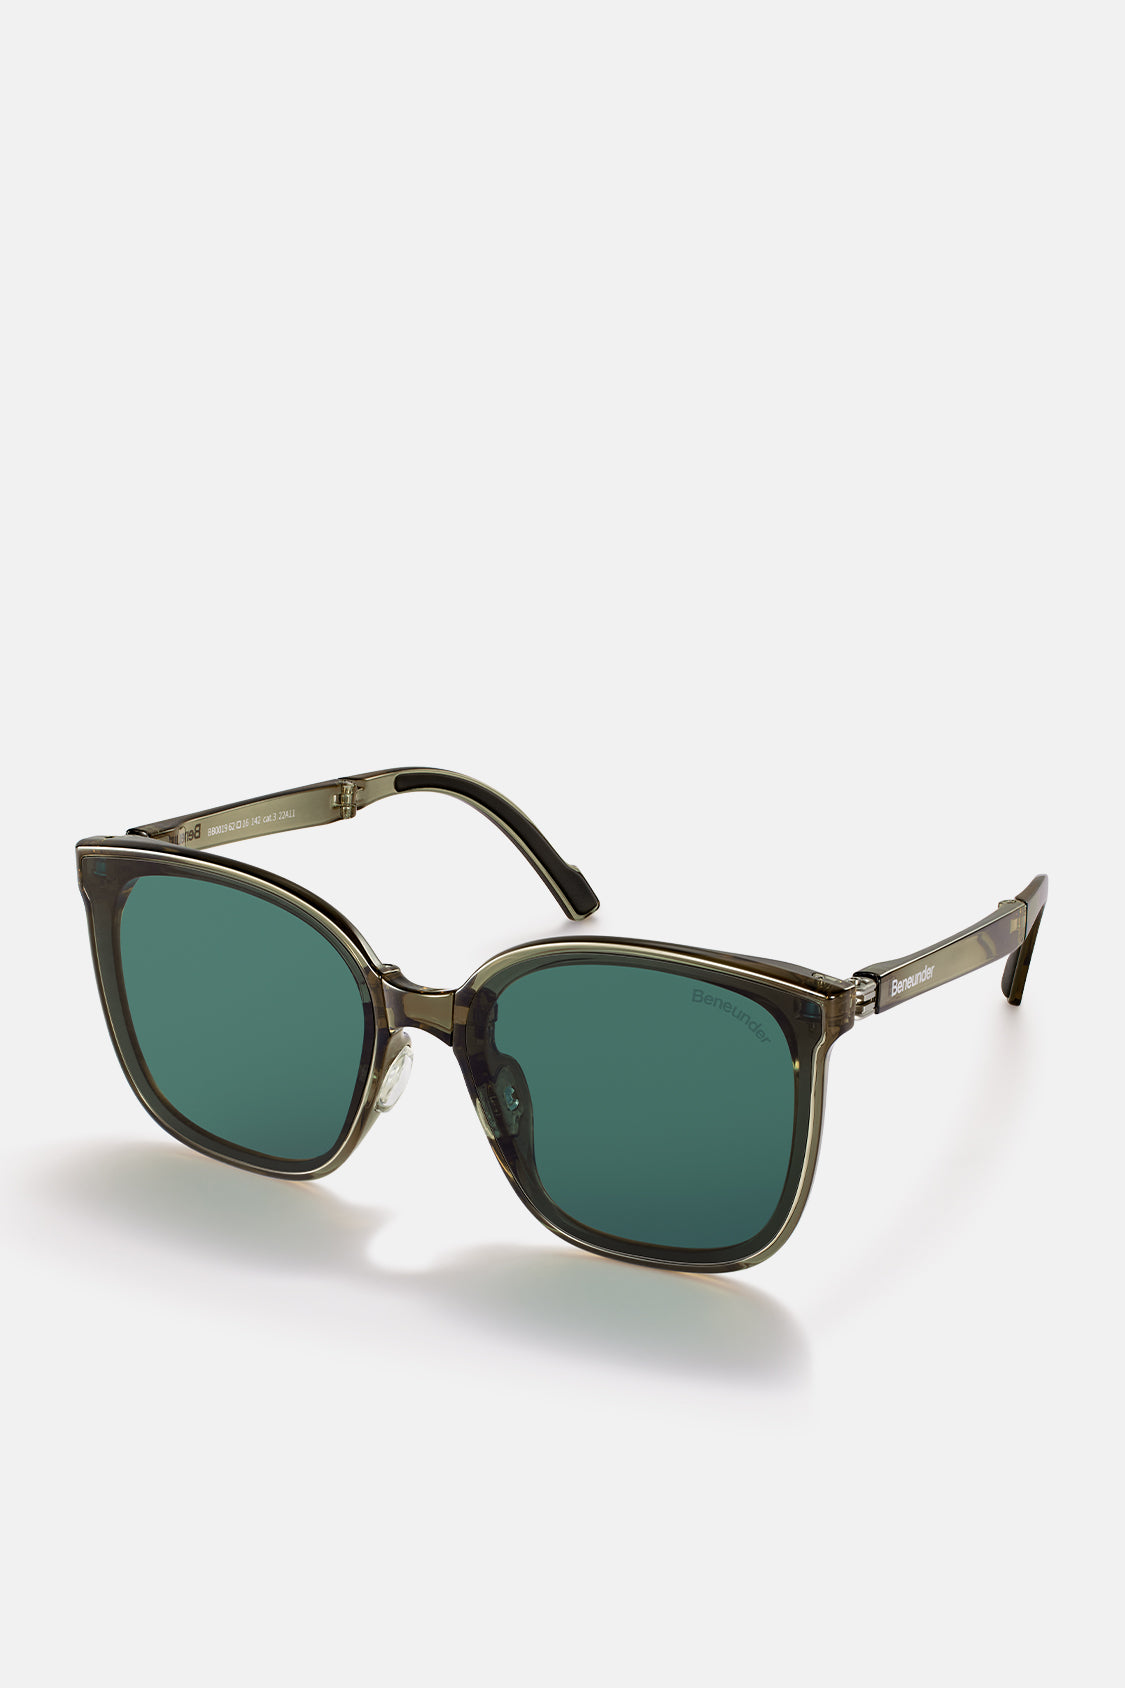 Polarized Folding Sunglasses for Women&Men, Beneunder UV400